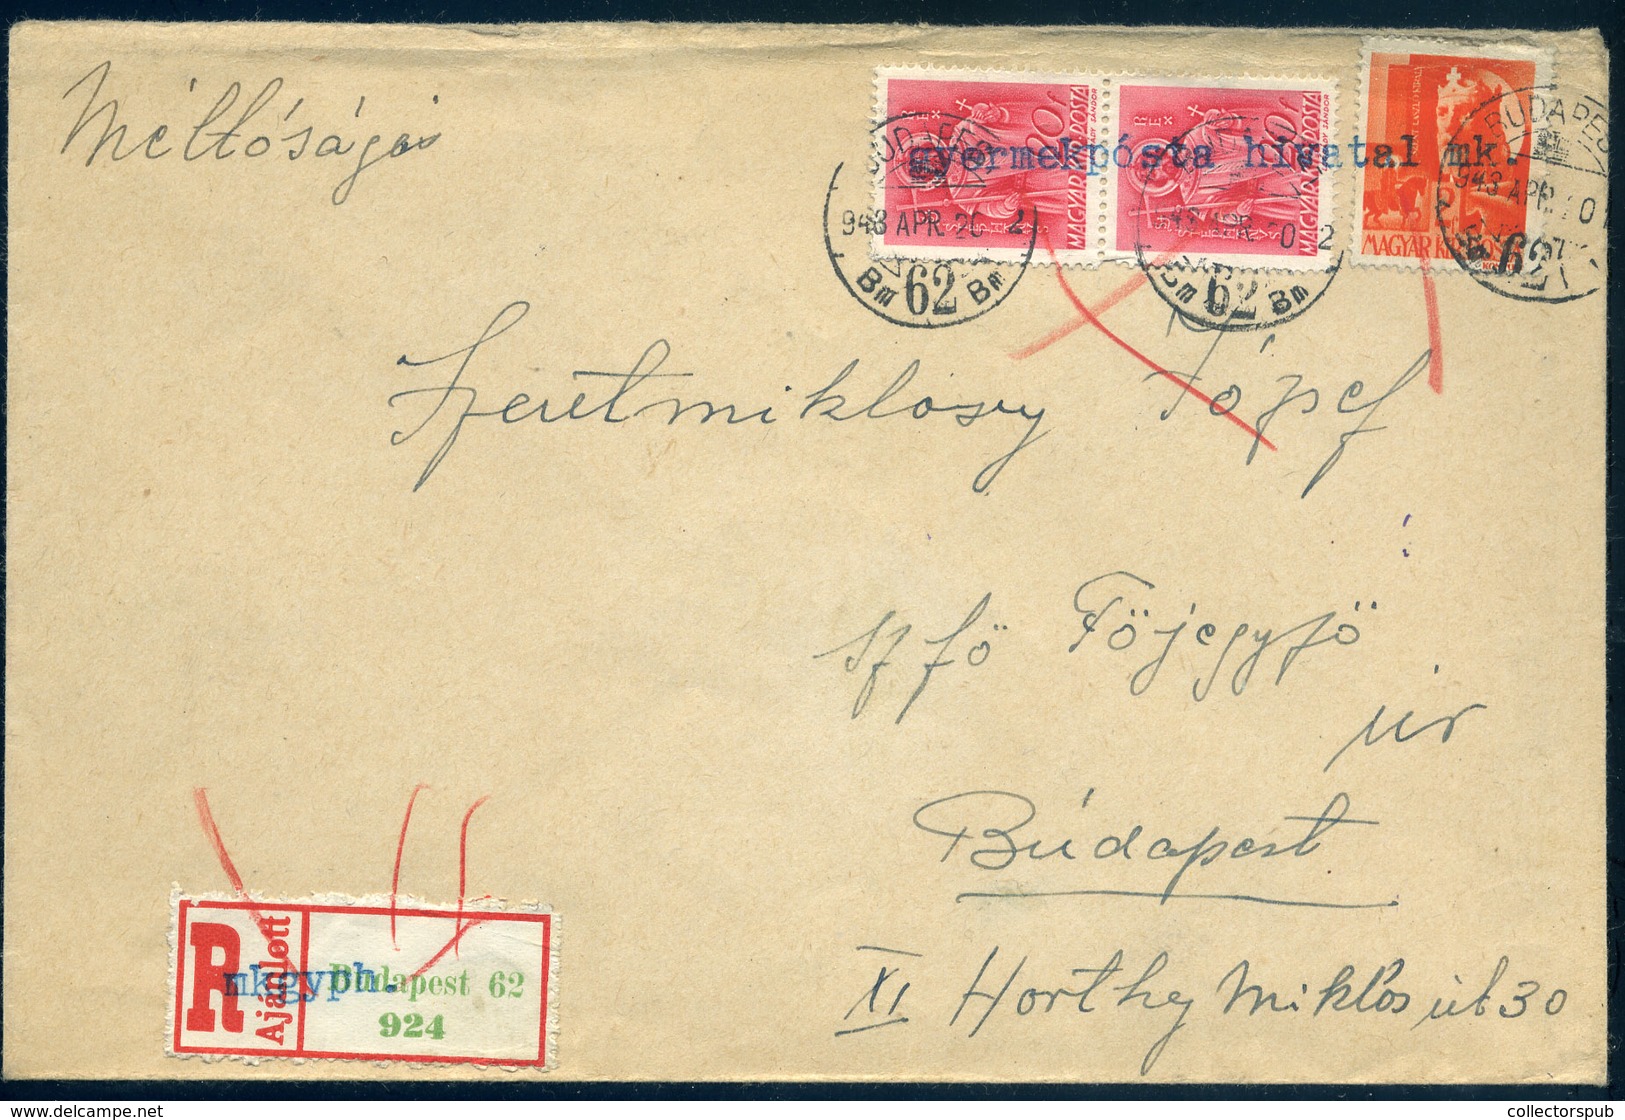 BUDAPEST 1943. Helyi Ajánlott Gyerekposta Hivatal Levél - Briefe U. Dokumente